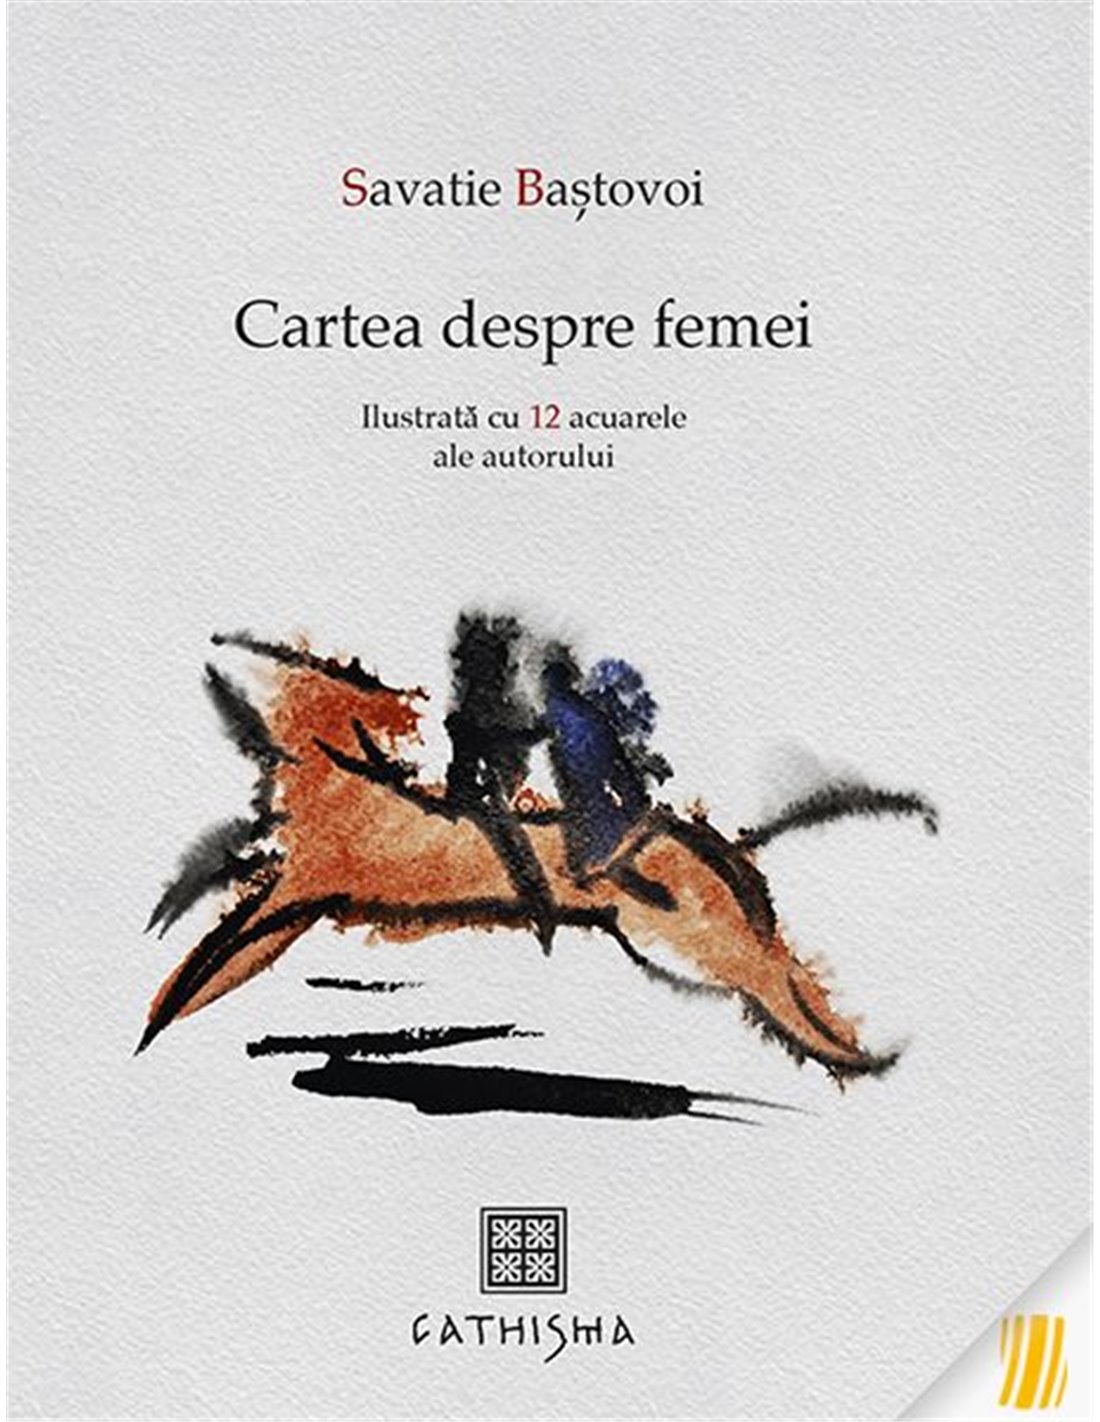 Cartea despre femei - Savatie Bastovoi